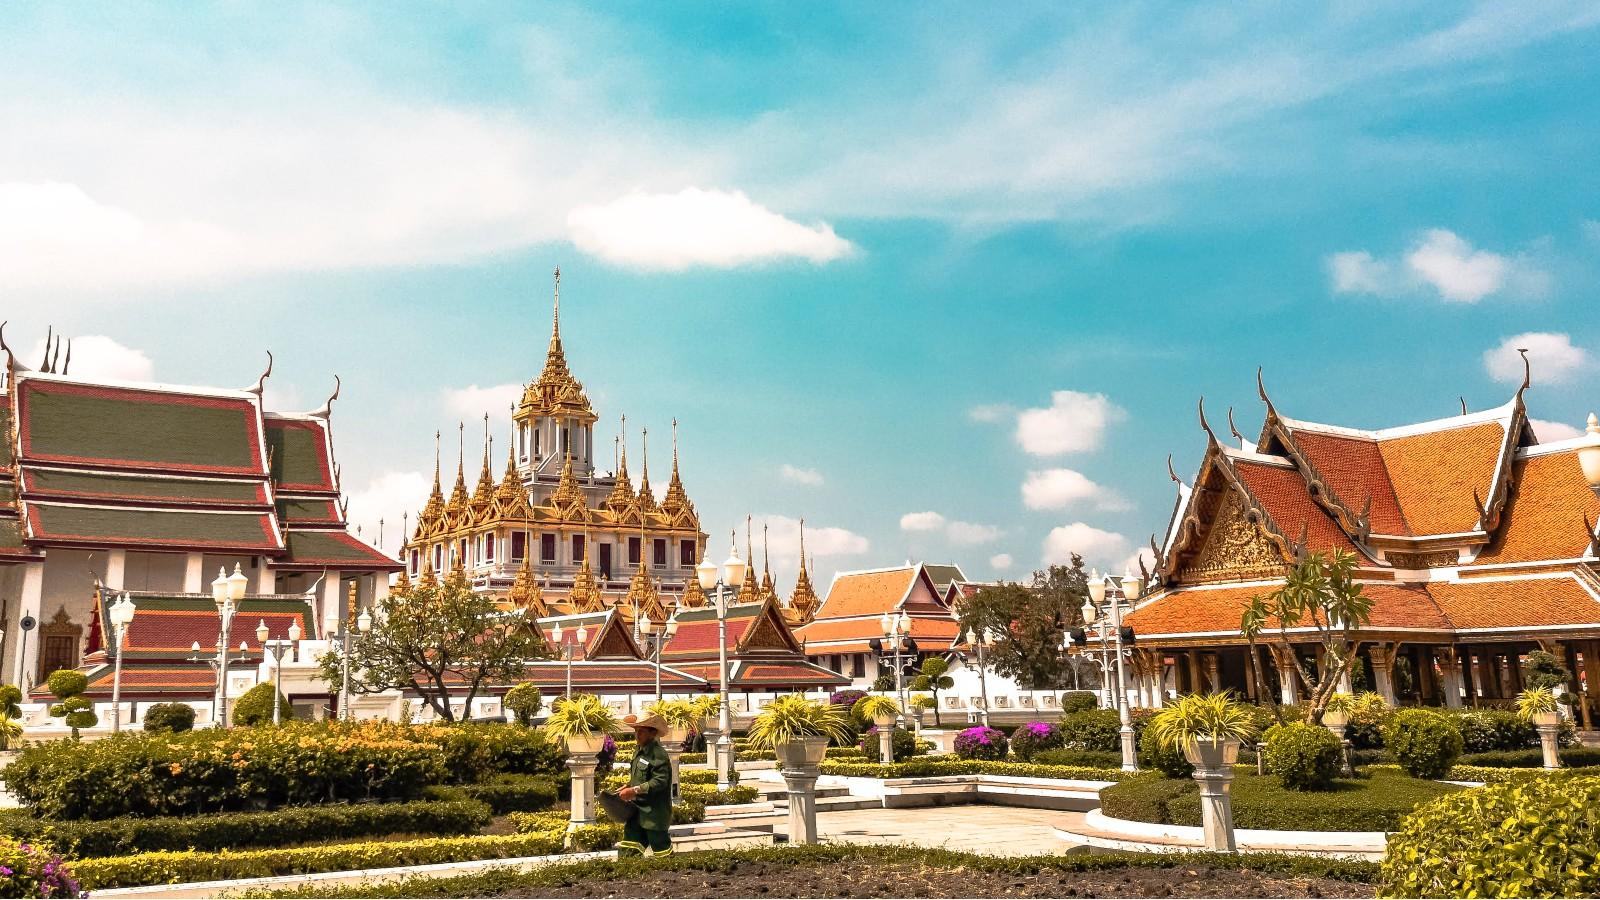 Cẩm nang du lịch Thái Lan hậu mở cửa: Điều khách Việt nên biết để có chuyến đi an toàn - Ảnh 1